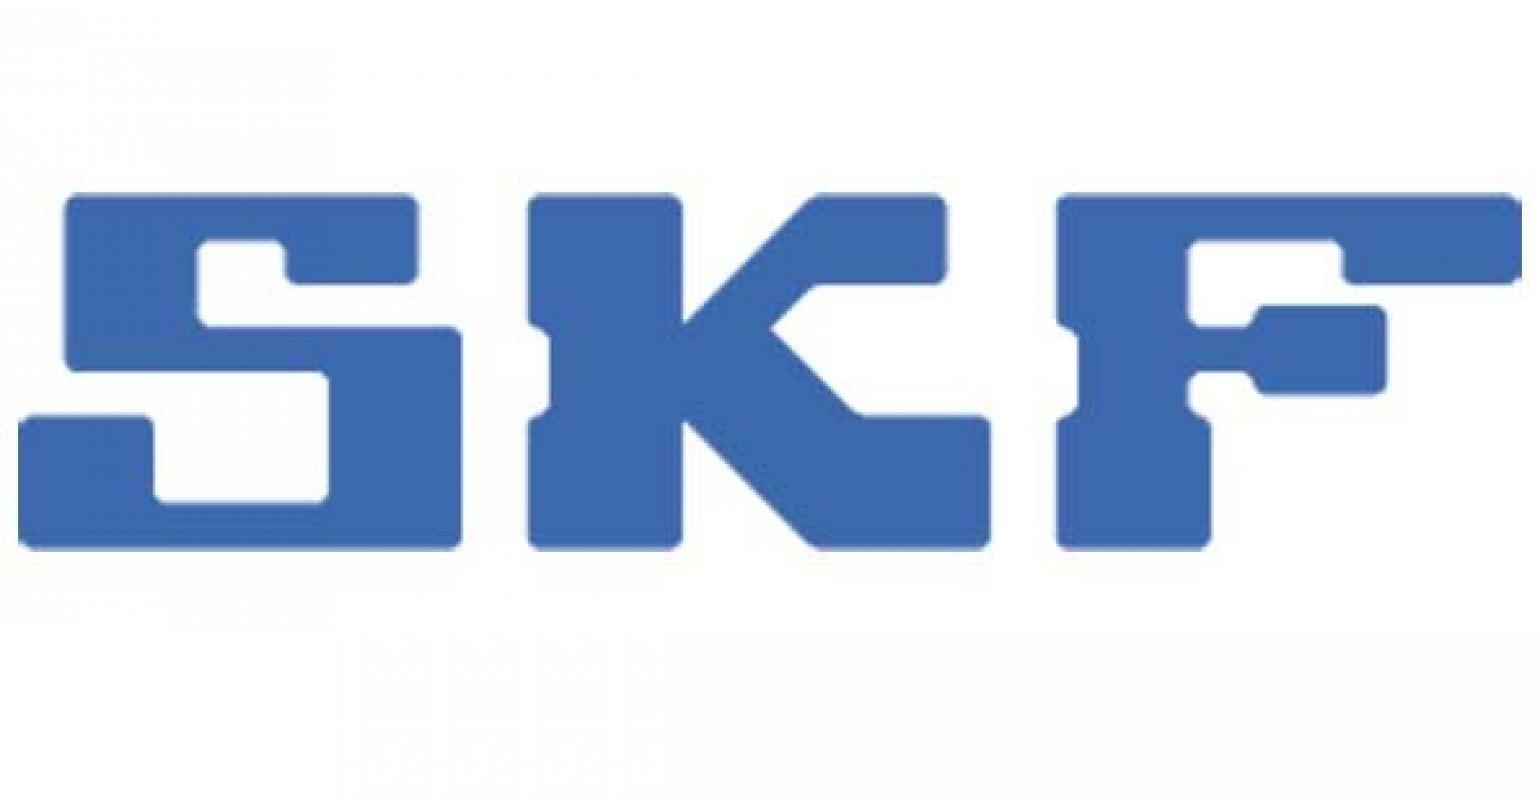 SKF Logo - SKF Buys Bearings Manufacturer Kaydon for $1.25 Billion